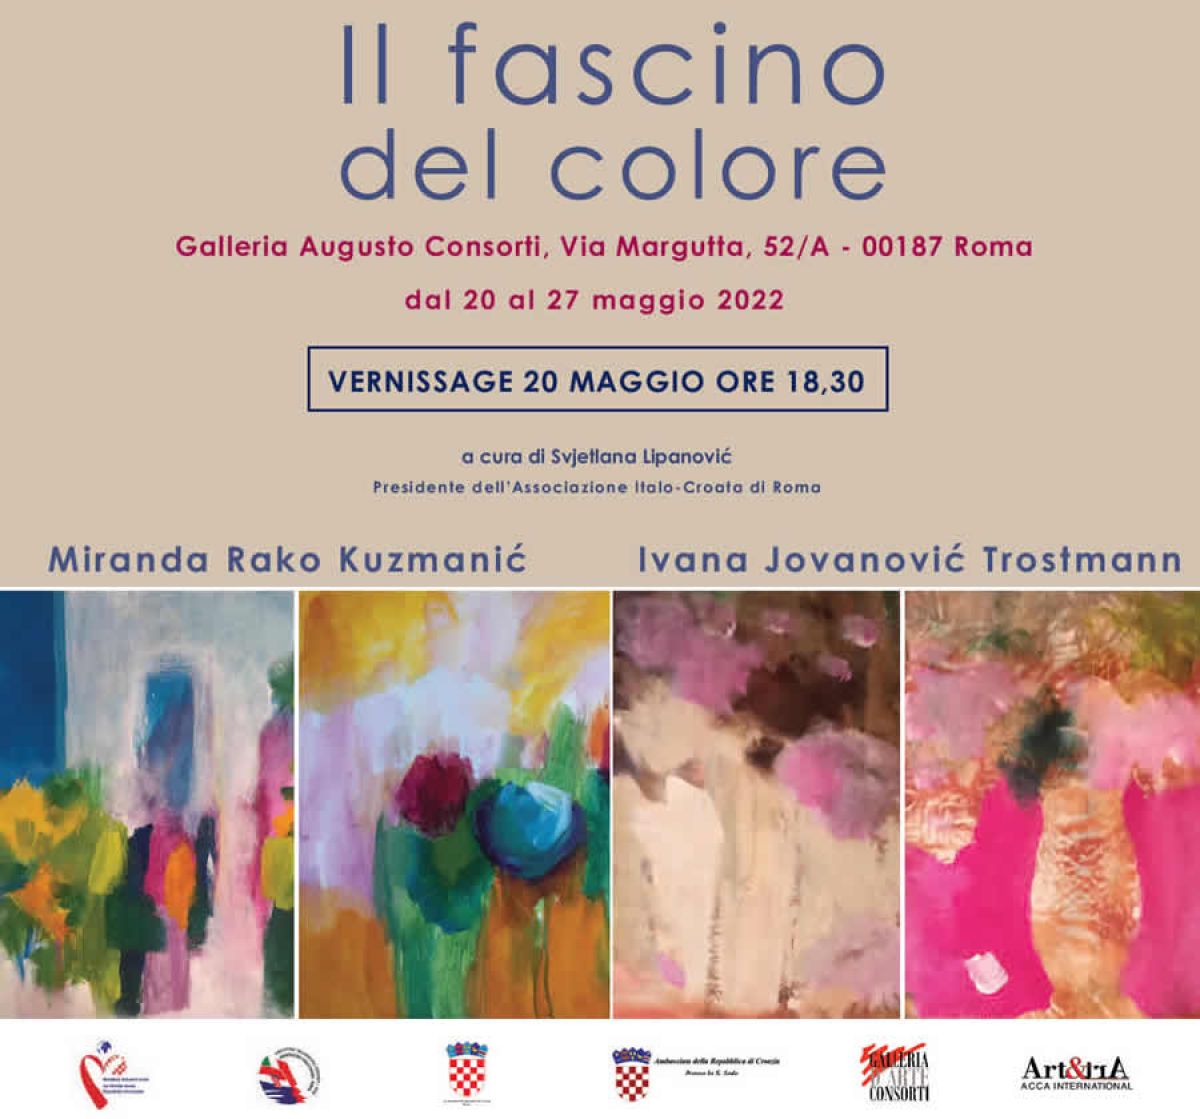 La mostra “Il fascino del colore” di Miranda Rako Kuzmanić e Ivana Jovanović Trostmann